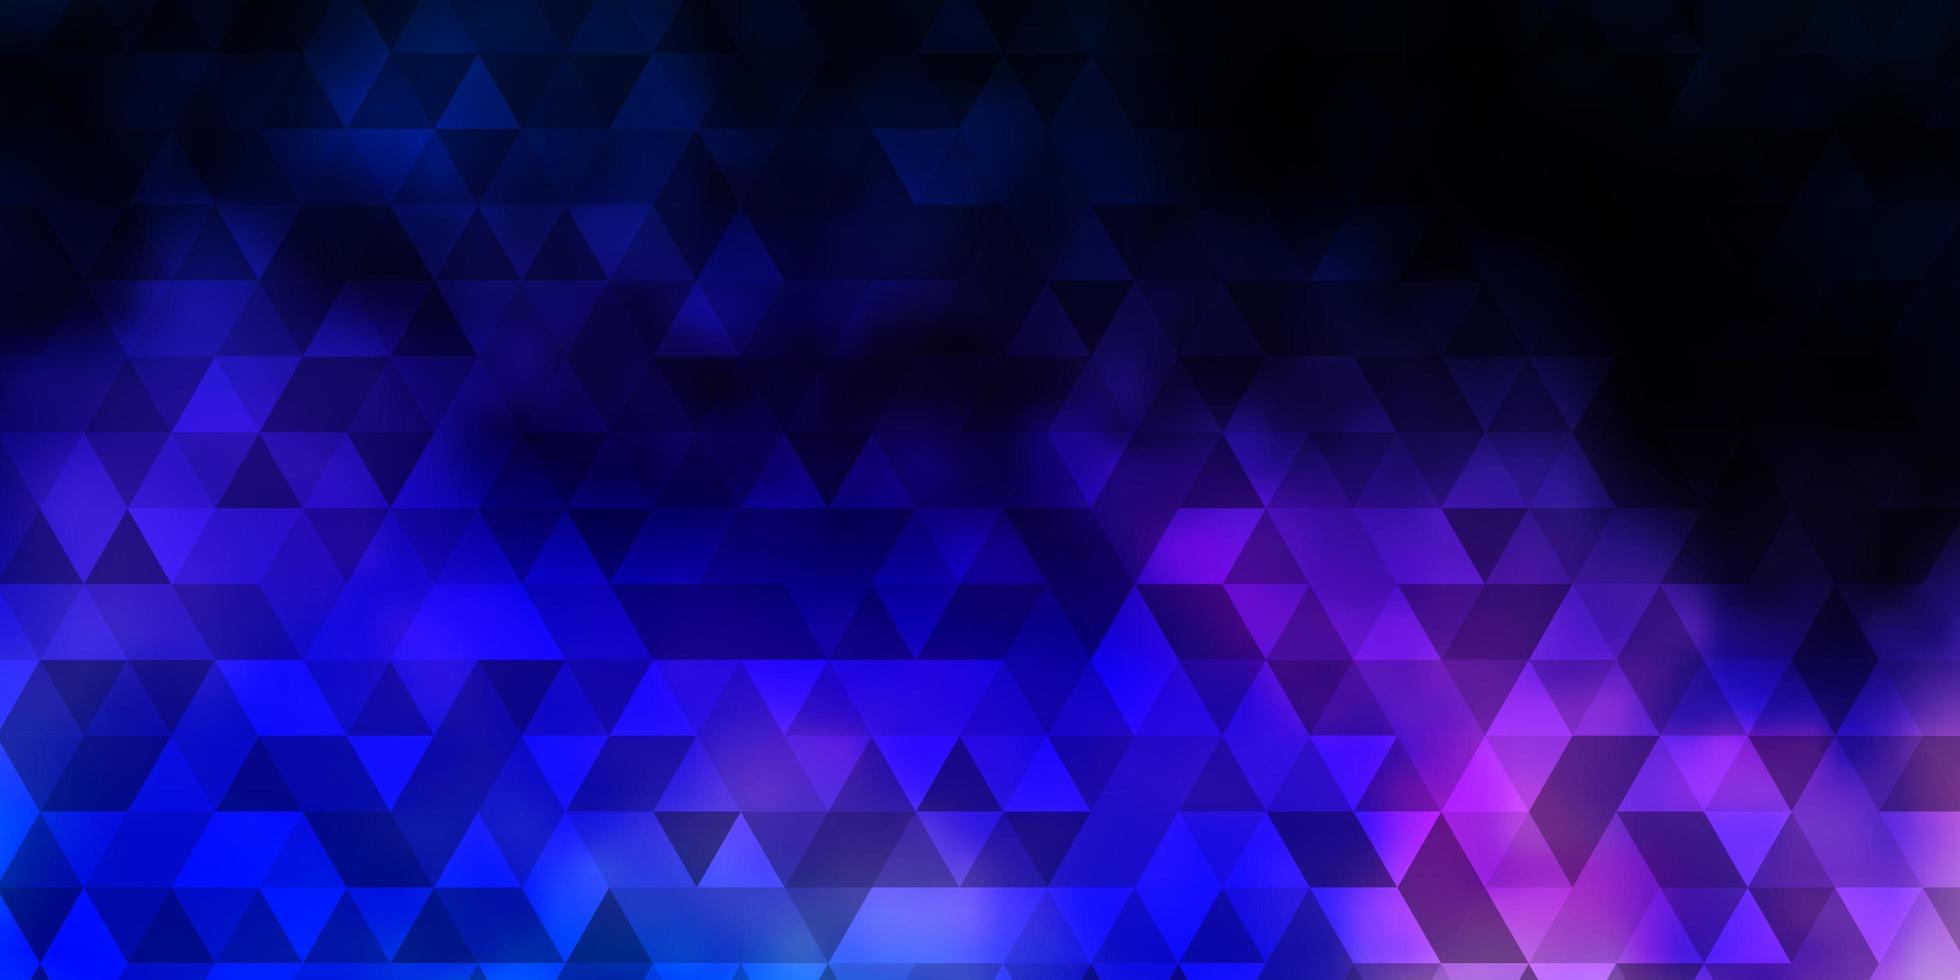 mörkrosa, blå vektorbakgrund med linjer, trianglar. vektor